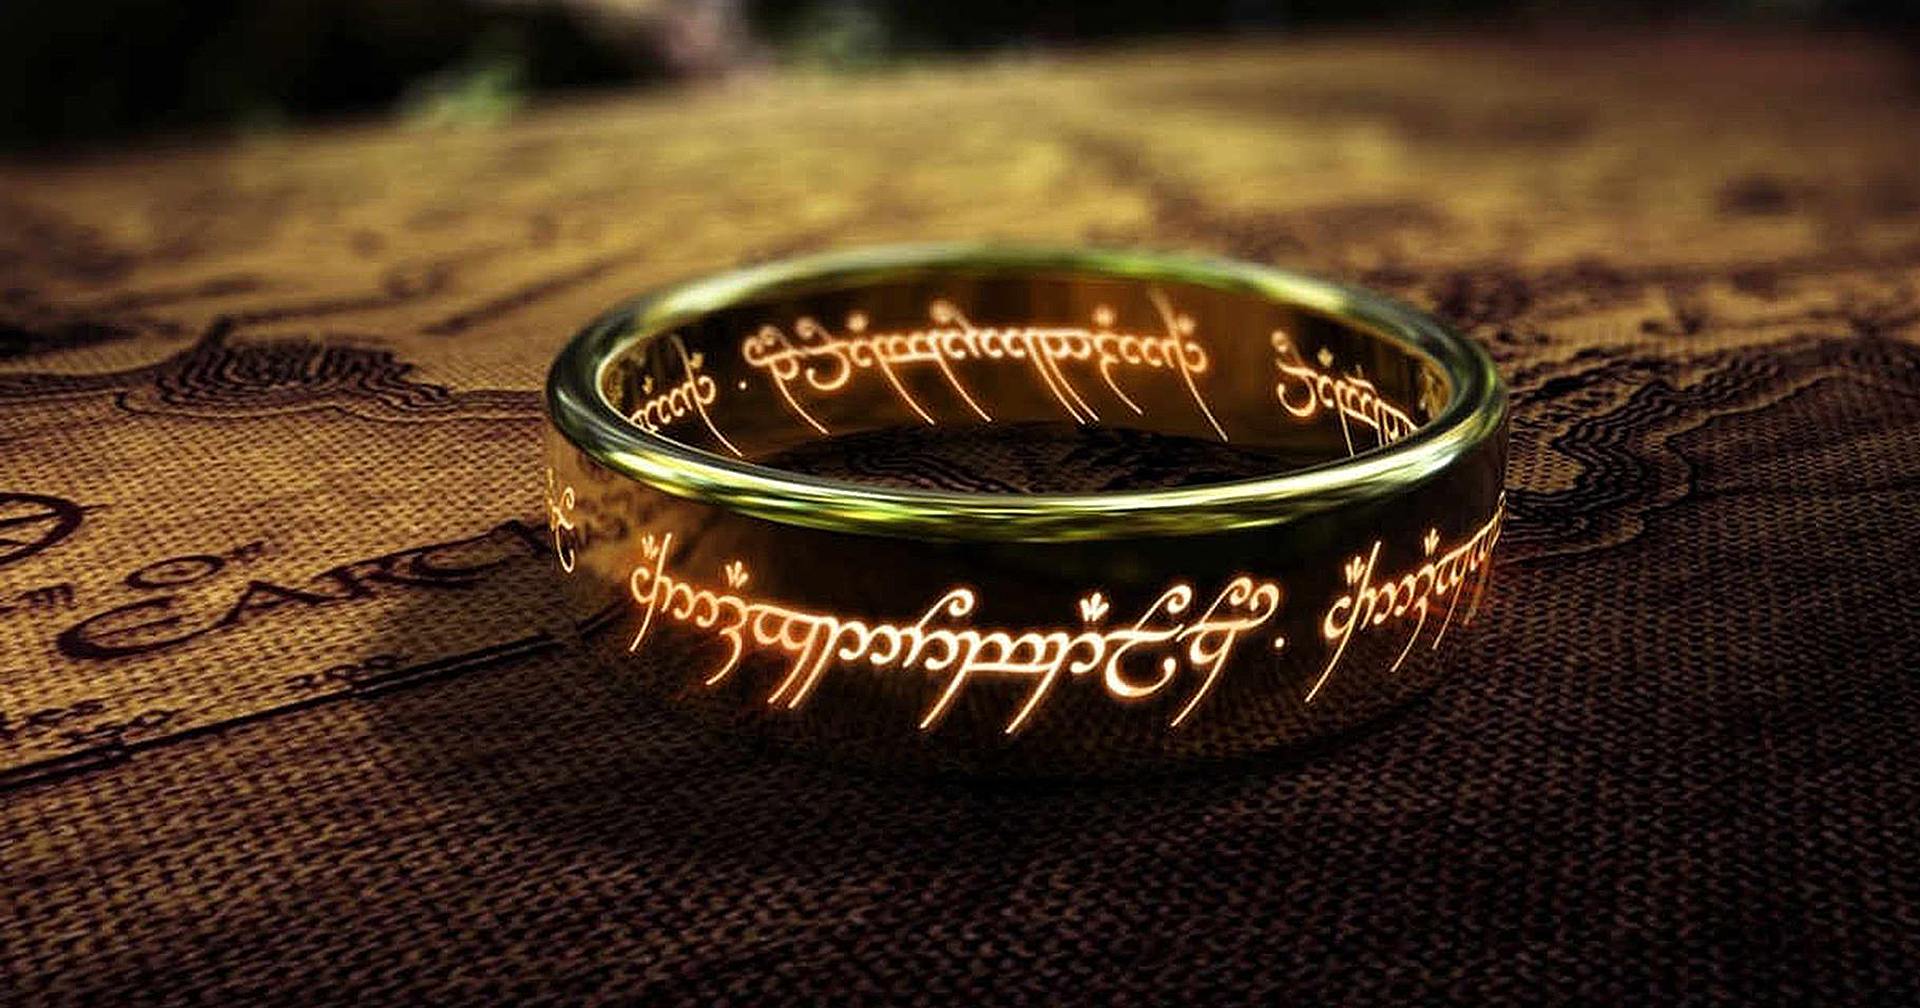 ซีรีส์ ‘Lord of the Rings’ ของ Amazon จะใช้ทุนสร้างซีซันแรกถึง 14,500 ล้านบาท